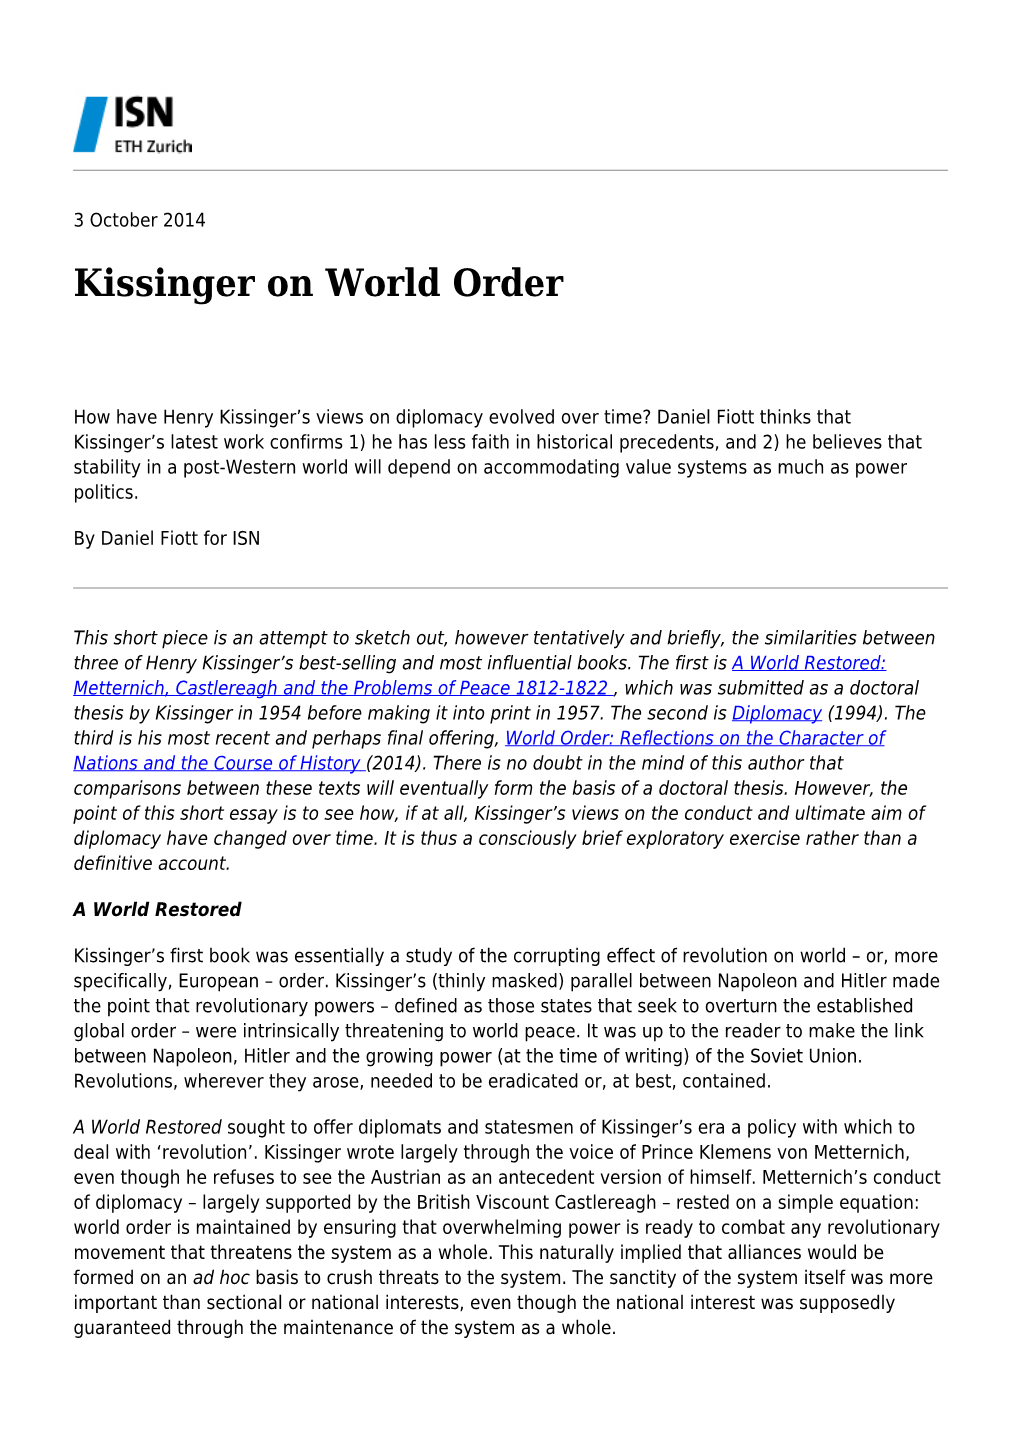 Kissinger on World Order